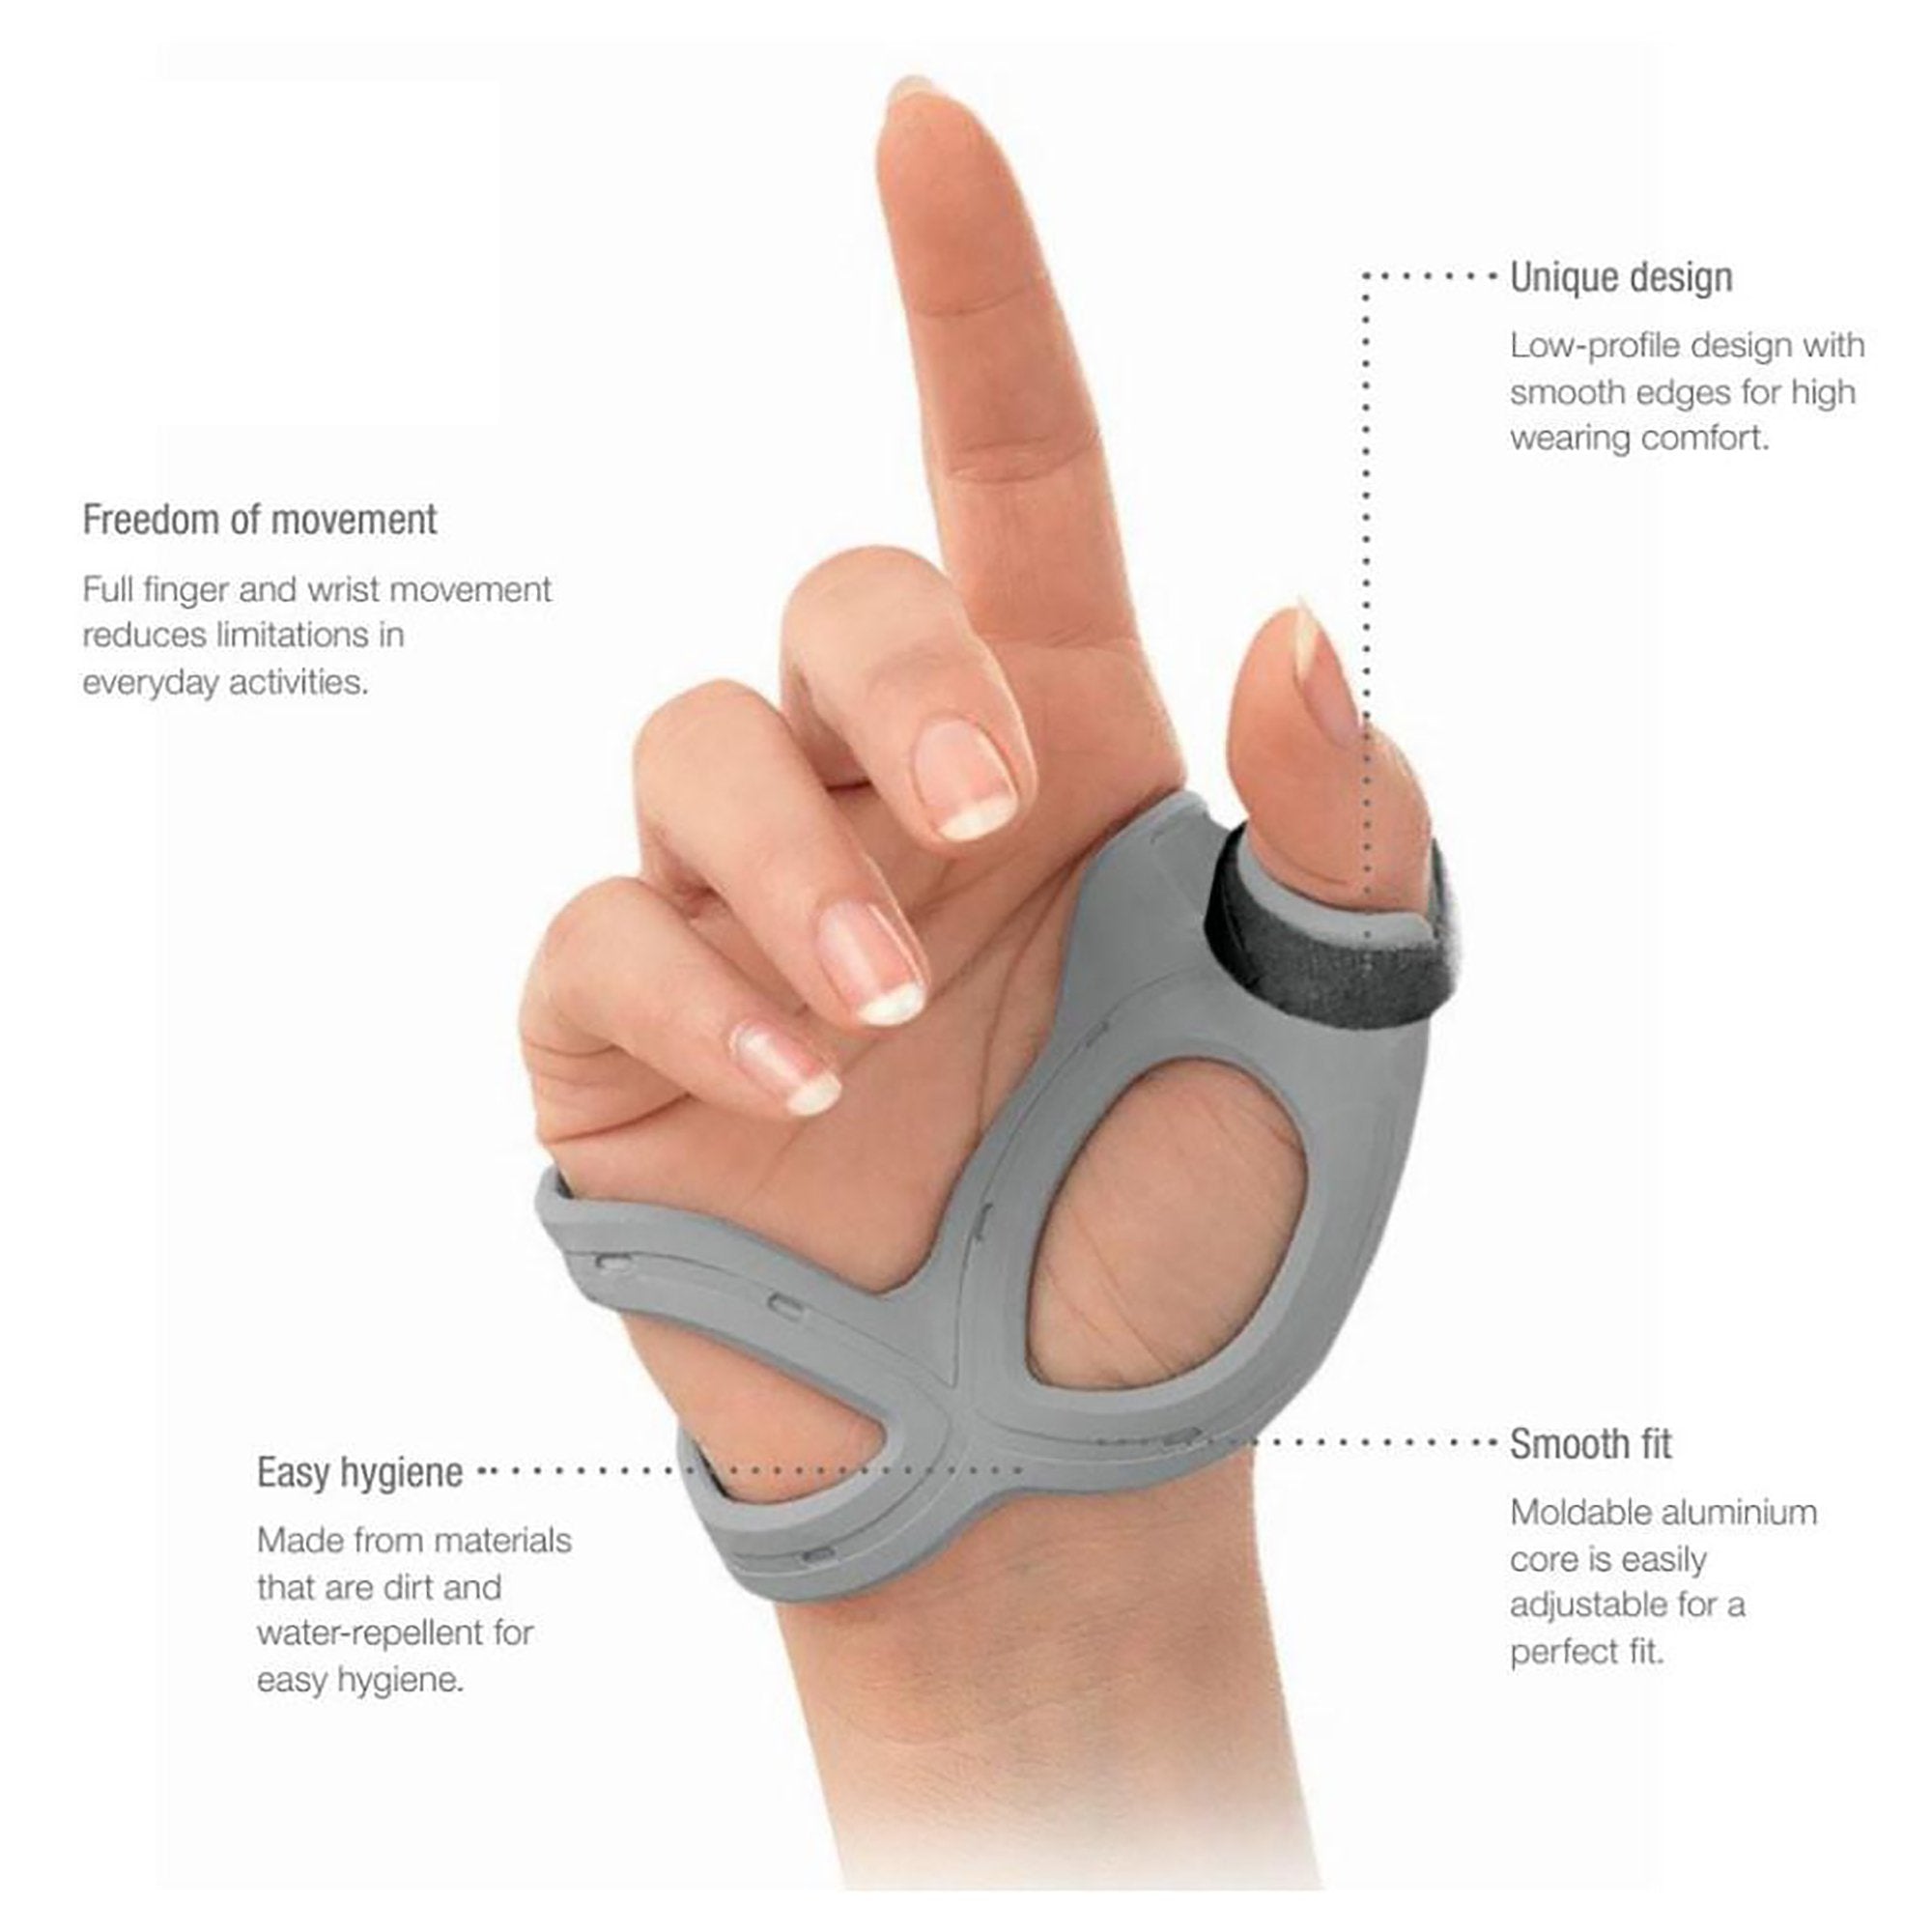 Actimove® Rhizo Forte Left Thumb Support, Large (1 Unit)